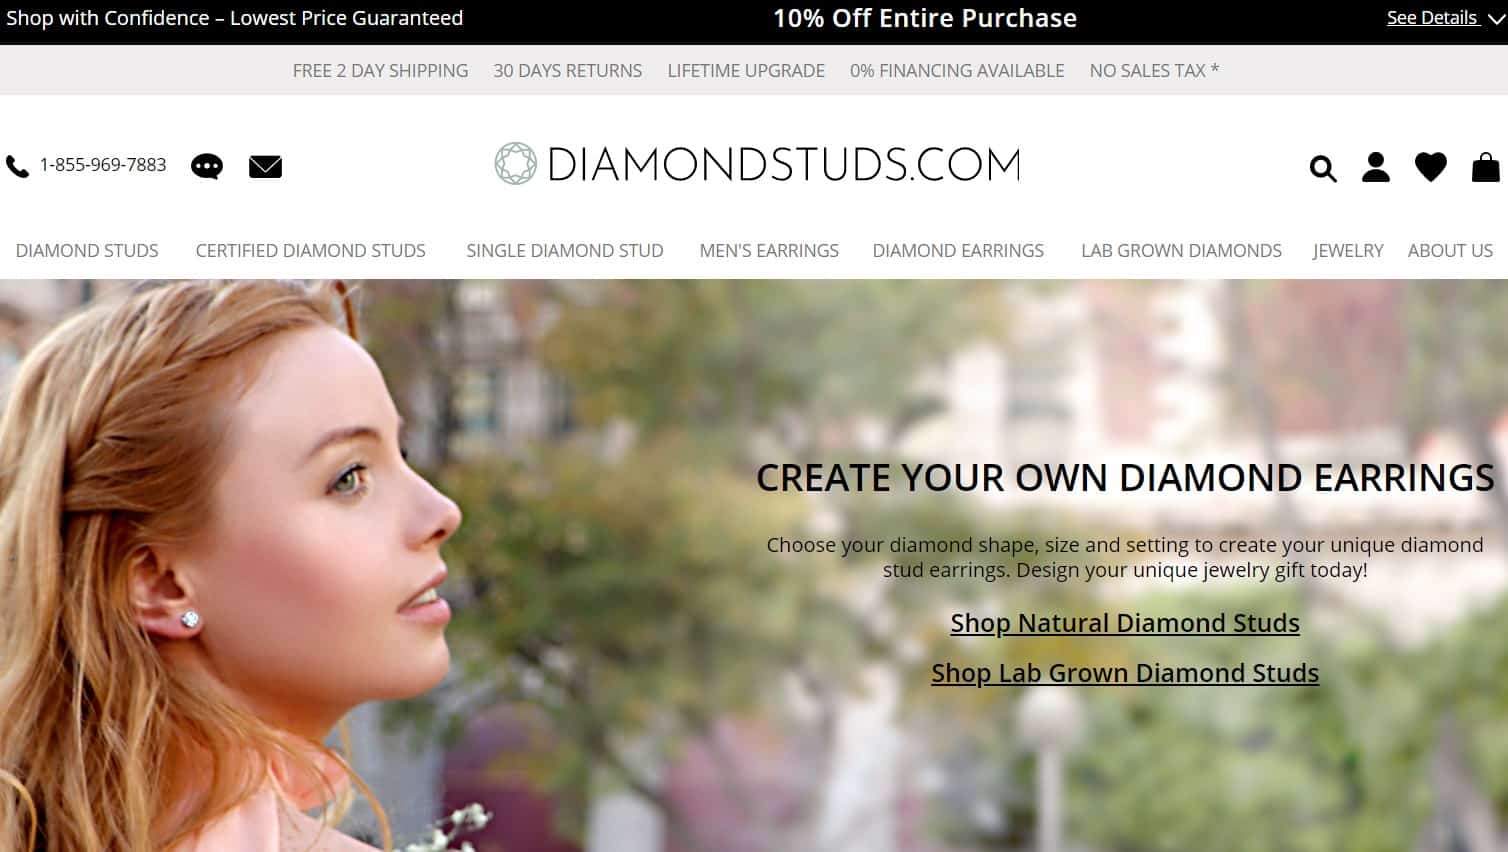 Diamondstuds.com